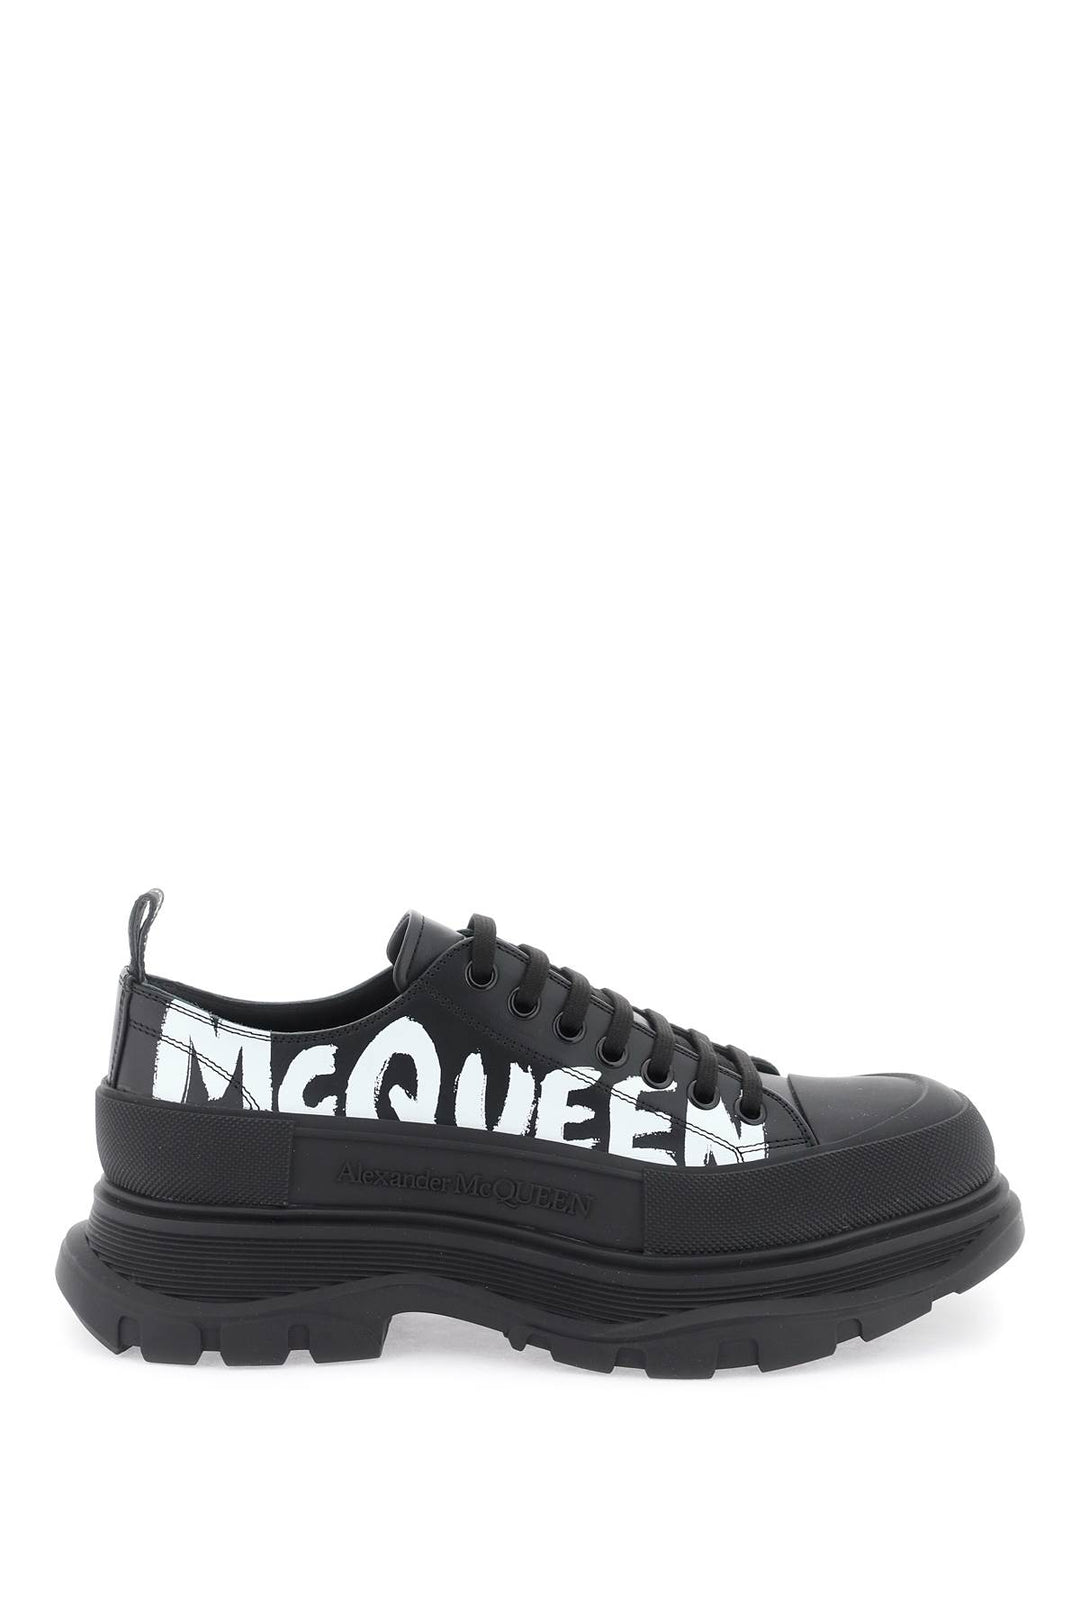 Alexander Mcqueen 'Tread Slick Graffiti' Sneakers   White